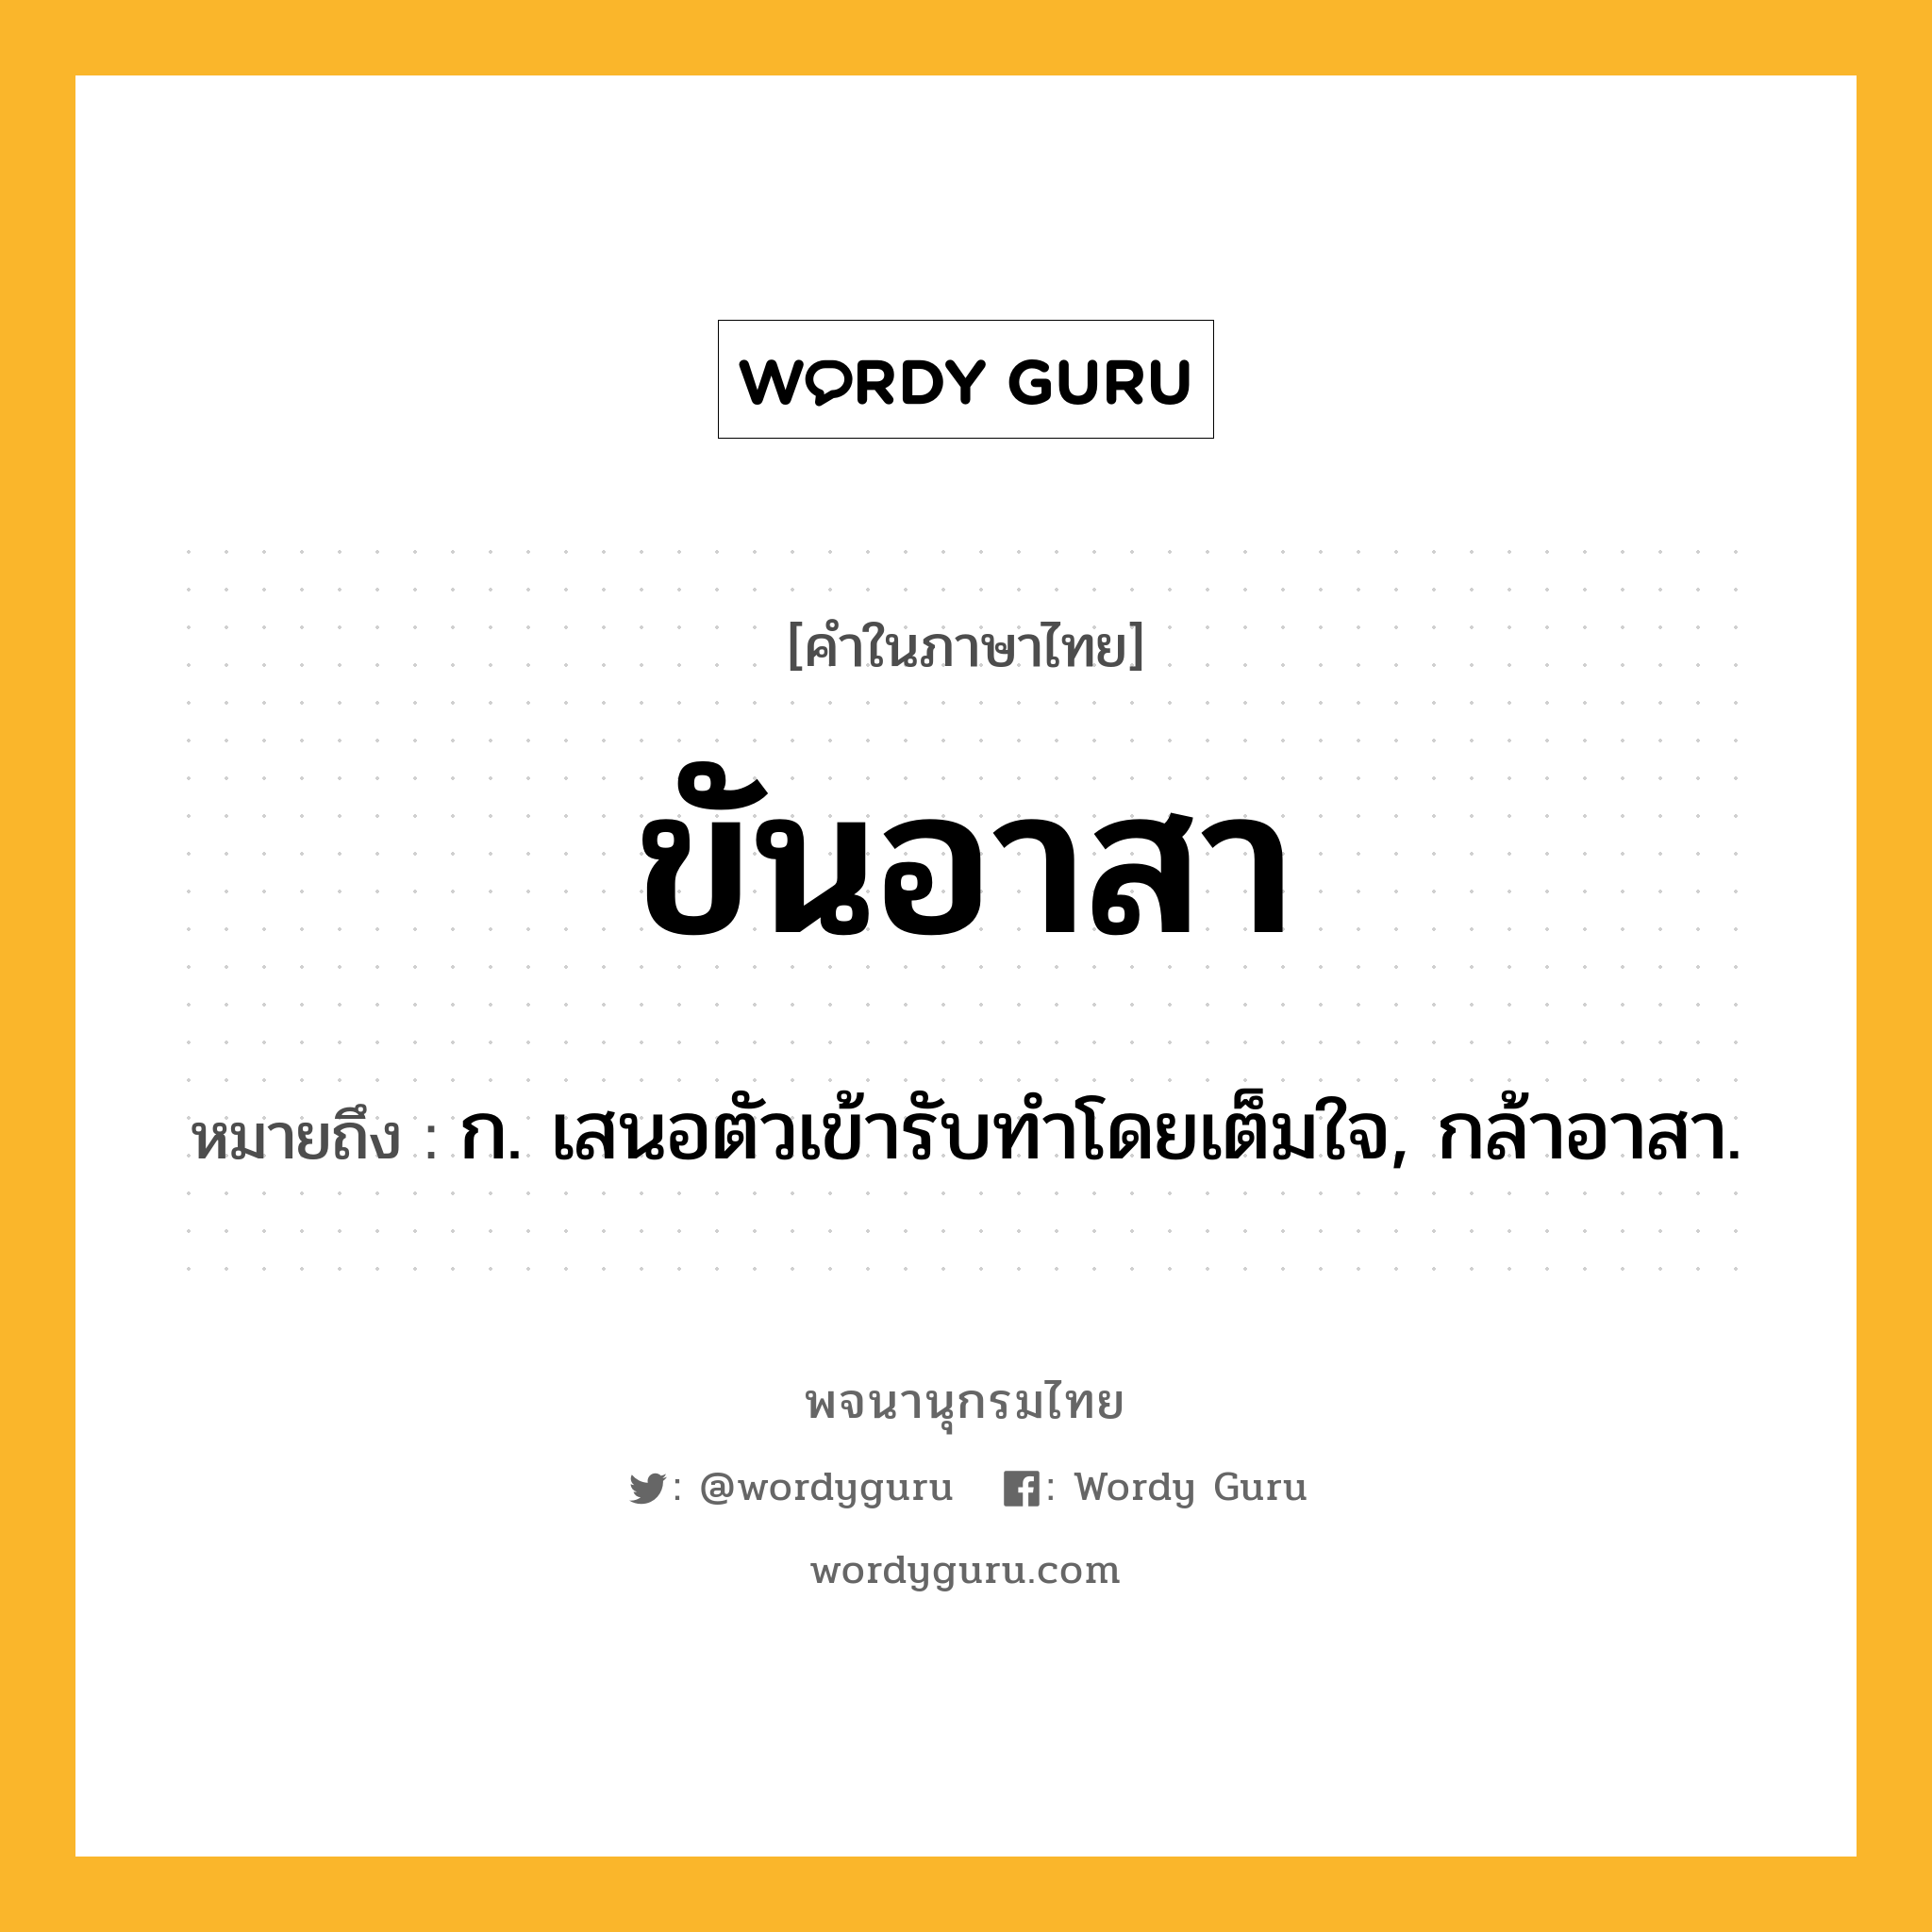 ขันอาสา ความหมาย หมายถึงอะไร?, คำในภาษาไทย ขันอาสา หมายถึง ก. เสนอตัวเข้ารับทําโดยเต็มใจ, กล้าอาสา.